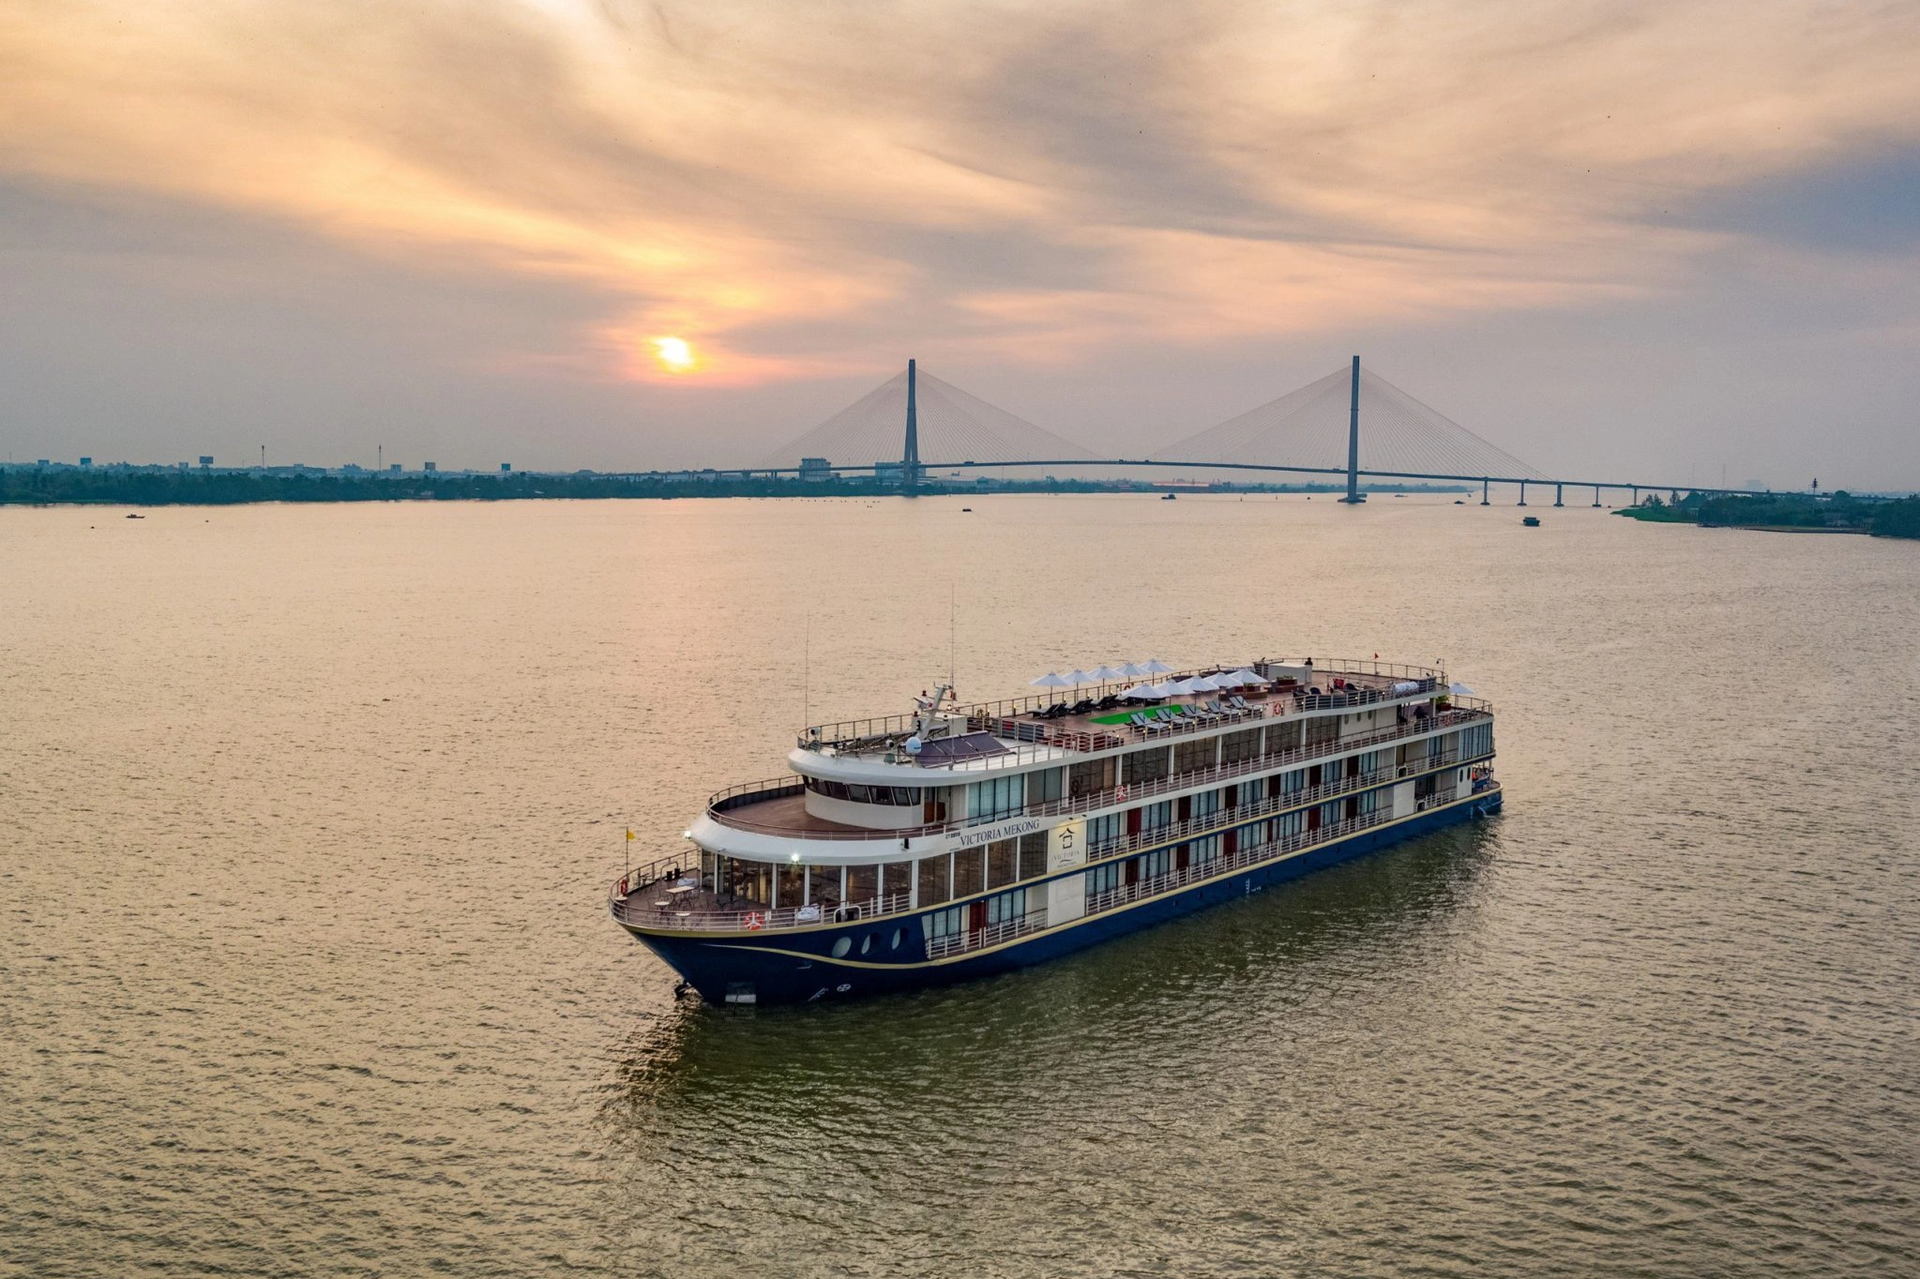 Cận cảnh du thuyền triệu đô trên sông Mekong: Có sân golf, rạp phim